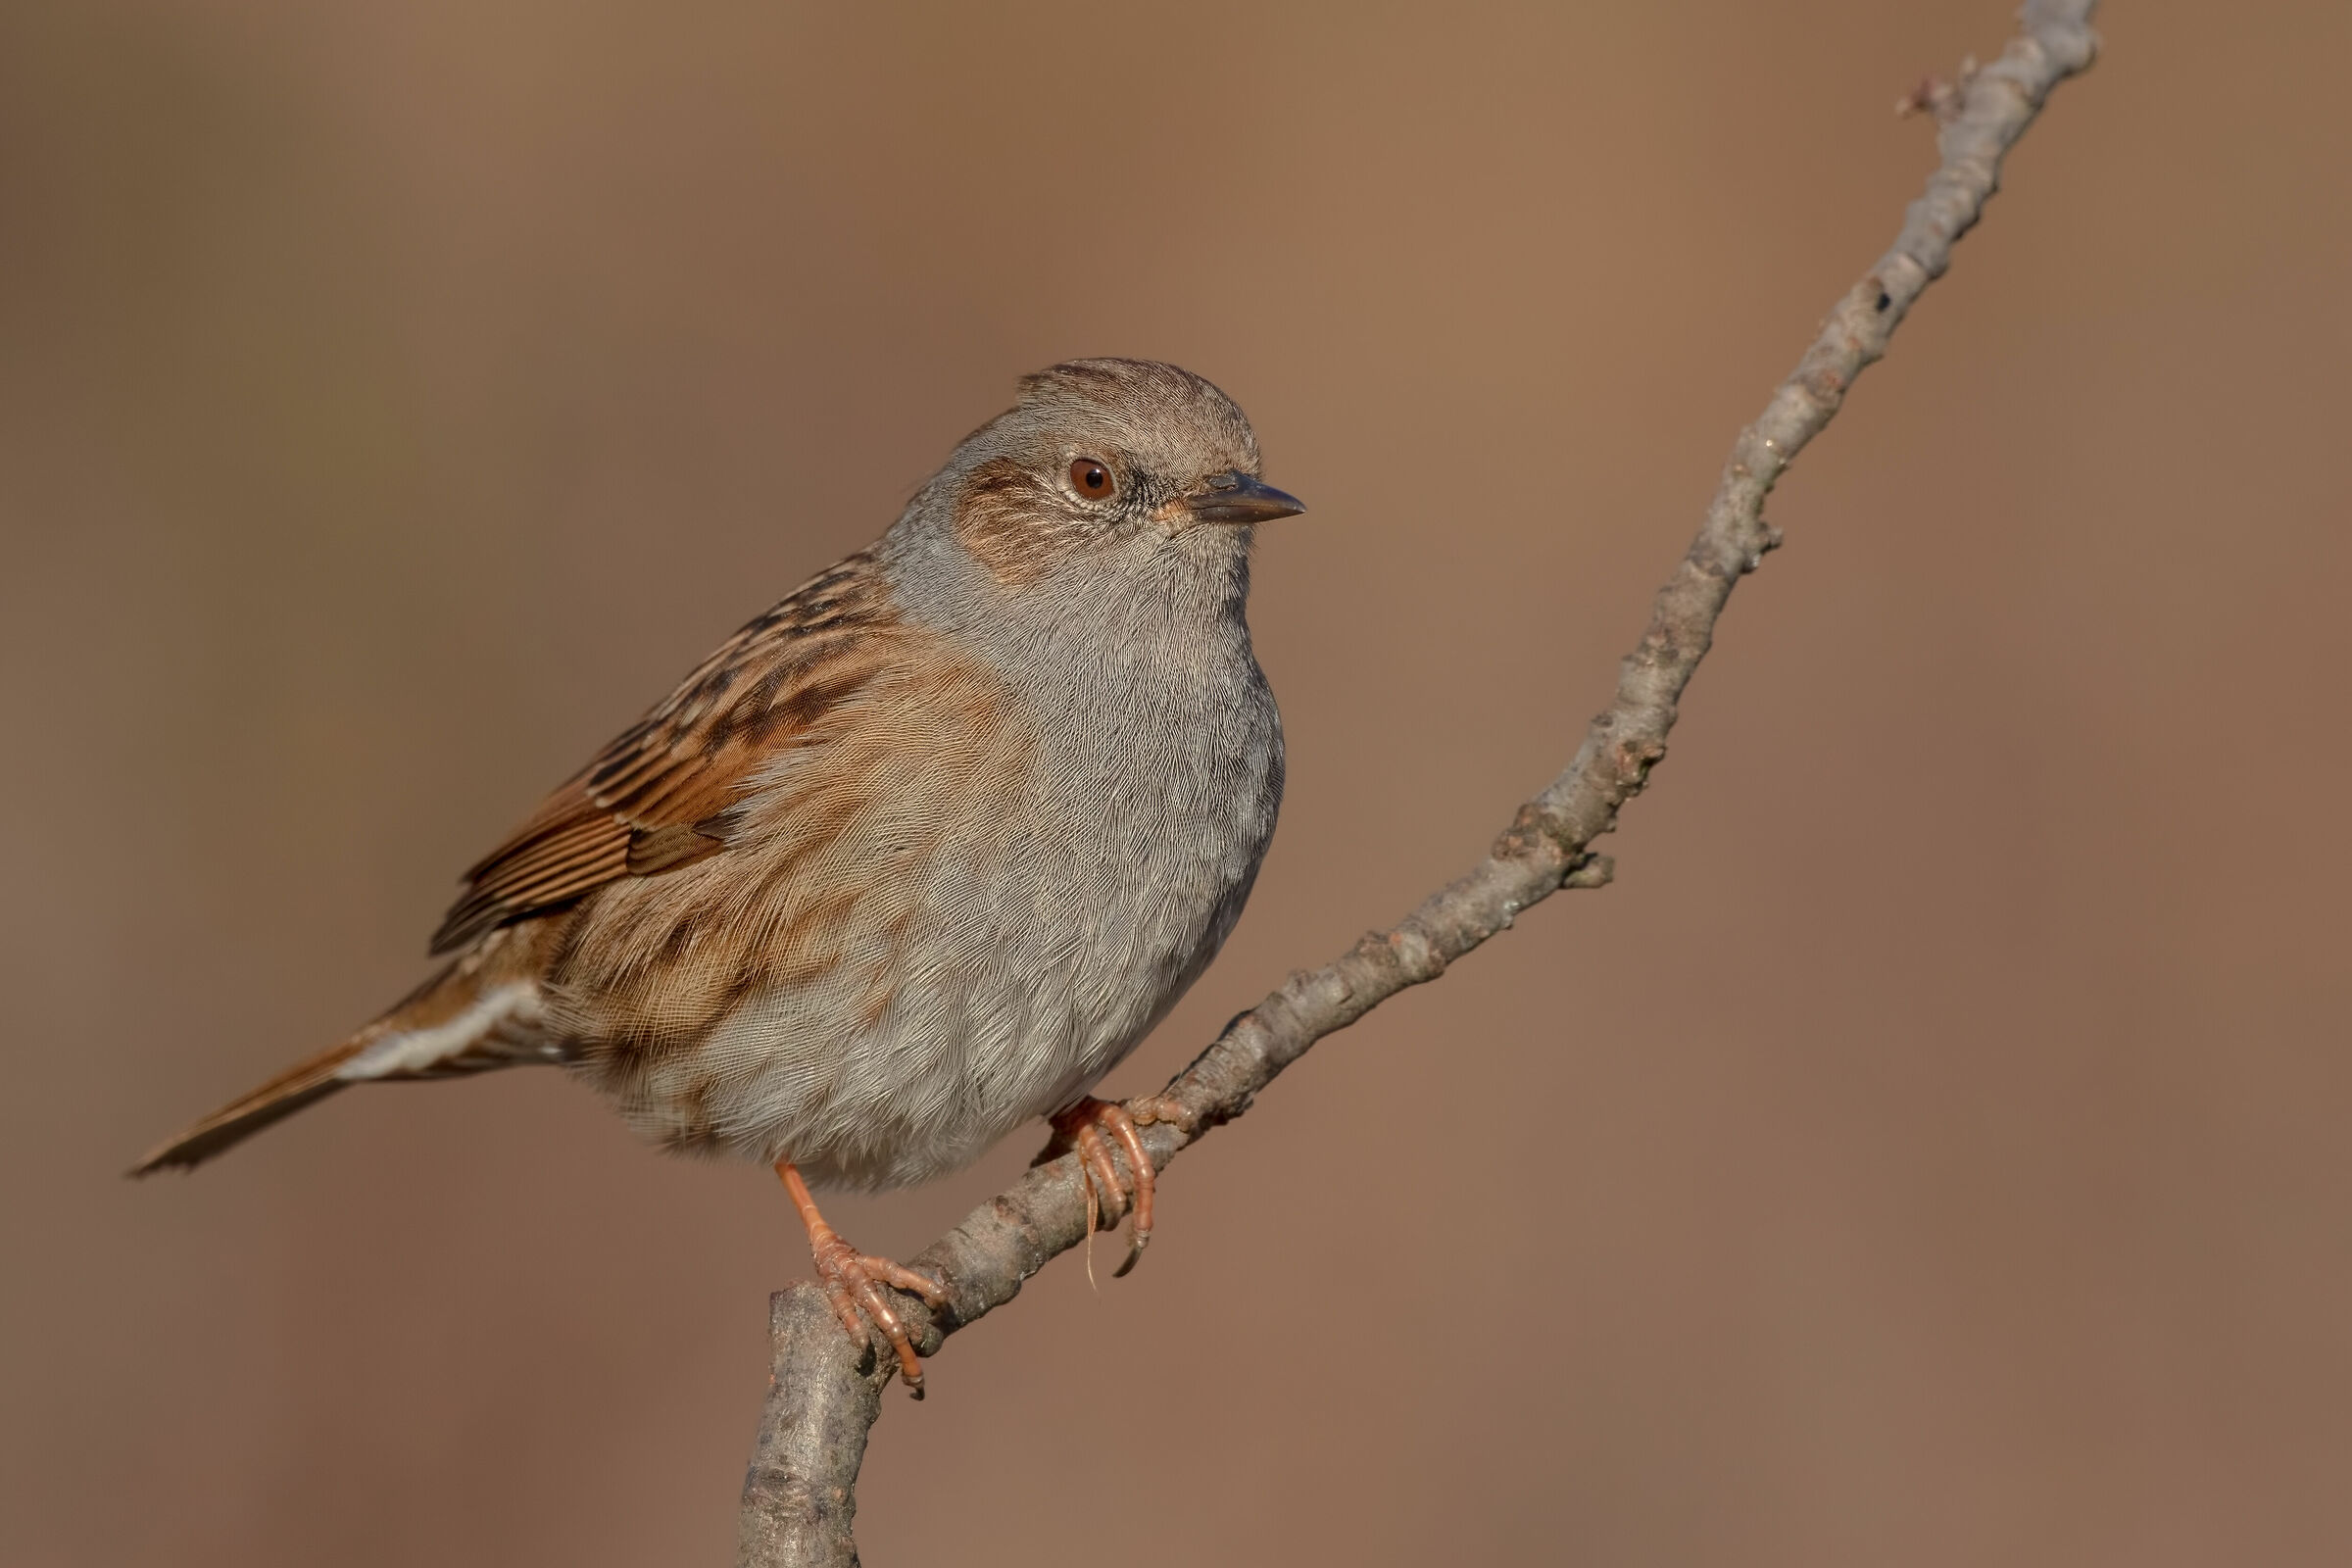 Sparrow scoop (on perch)...